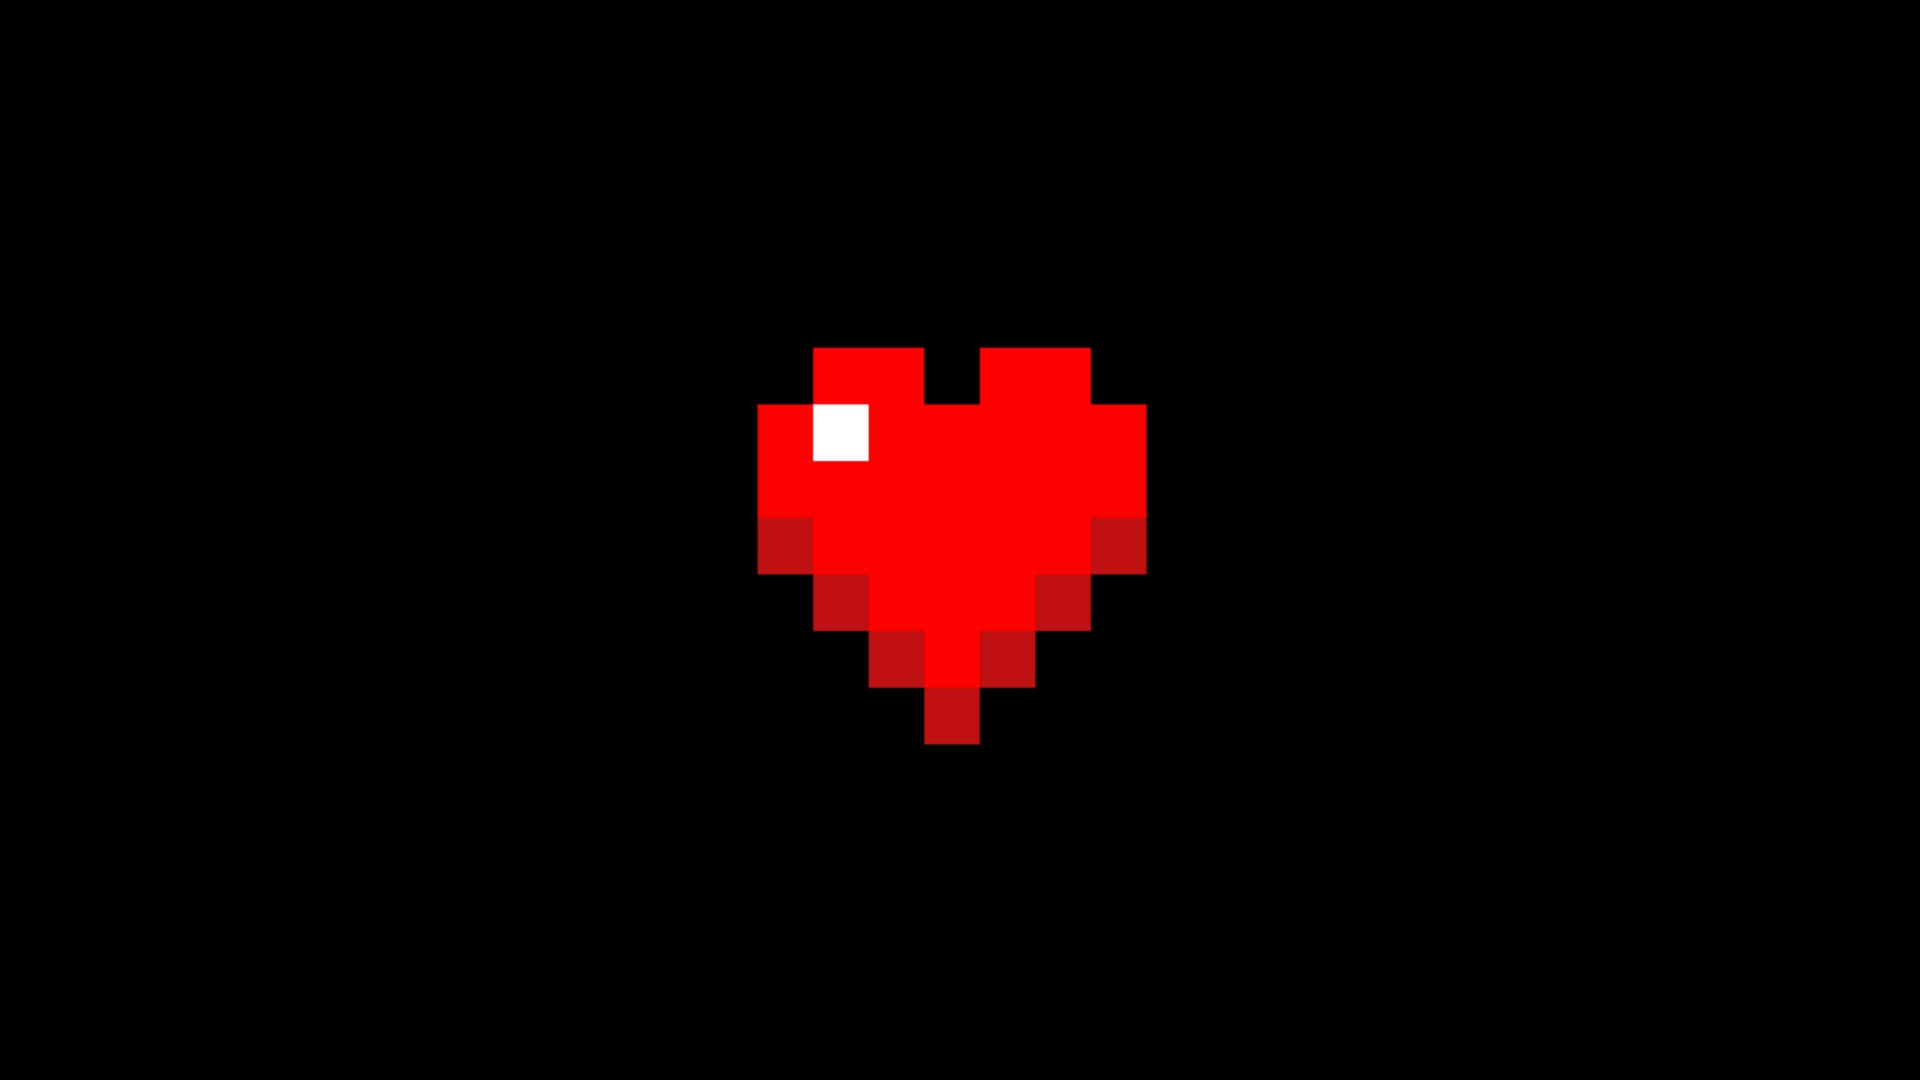 Red Heart Aesthetic Pixel Art Hd Wallpaper